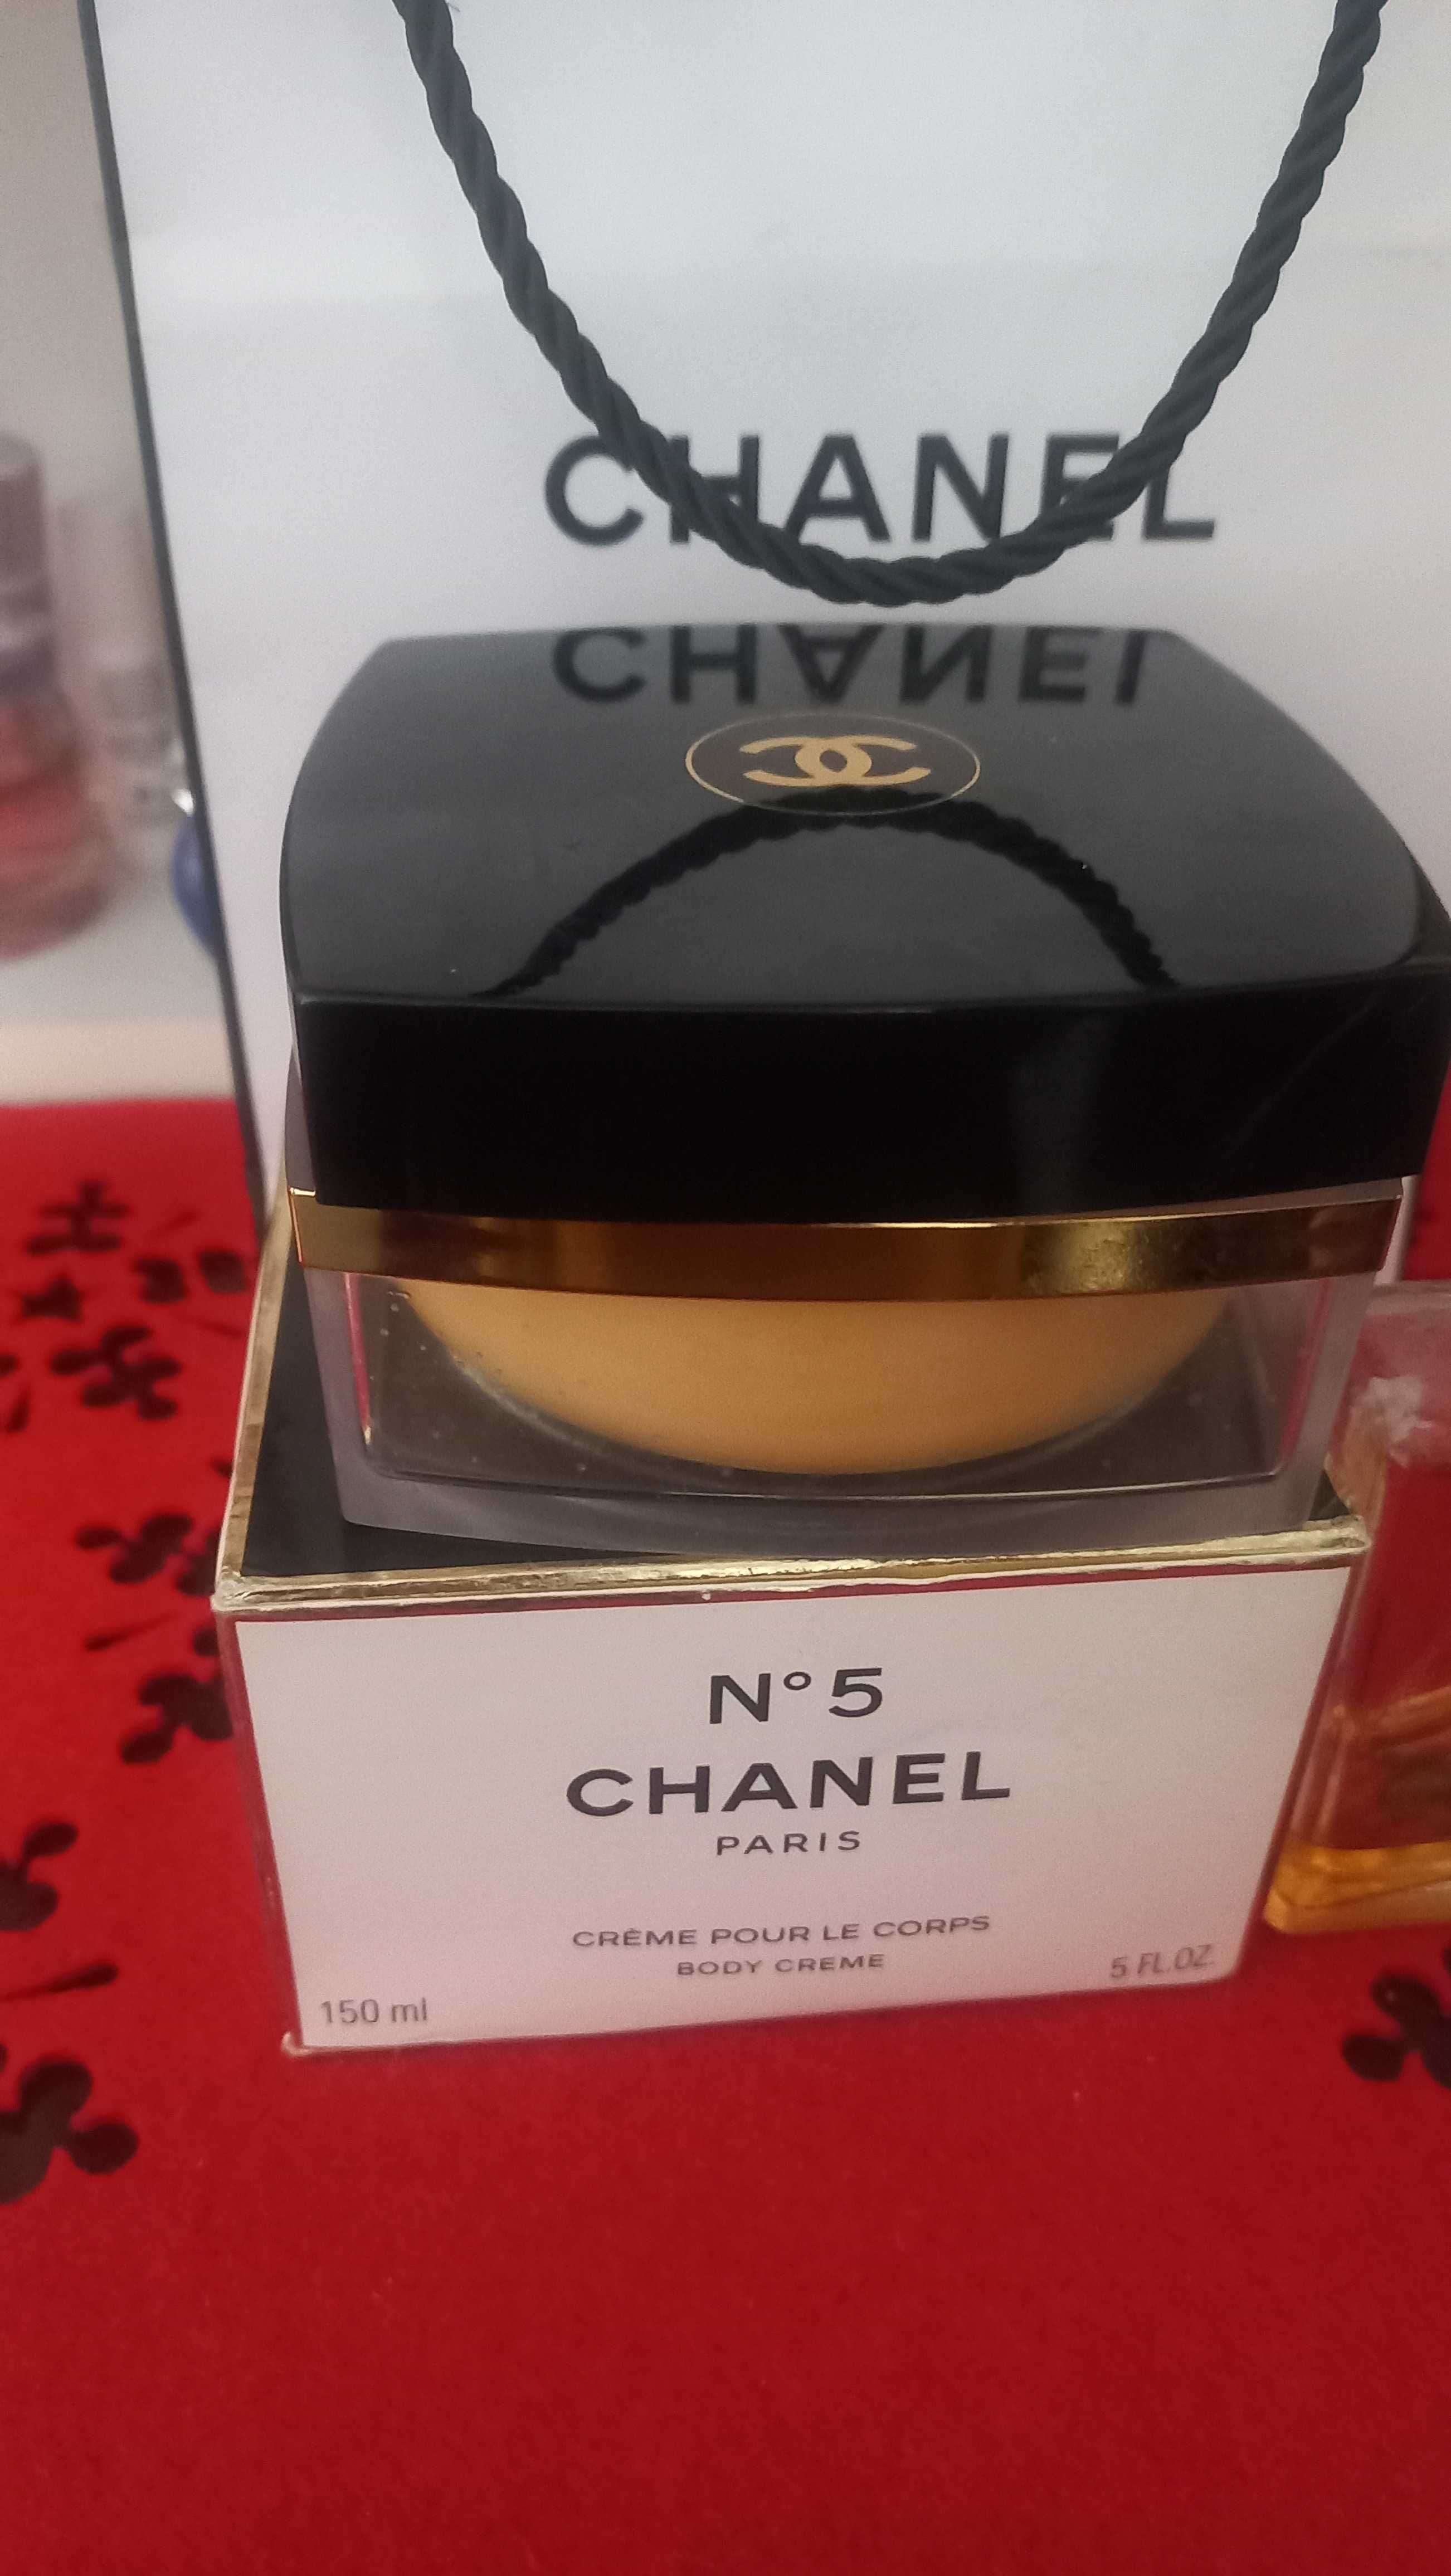 Chanel N5 la creme corps the body cream